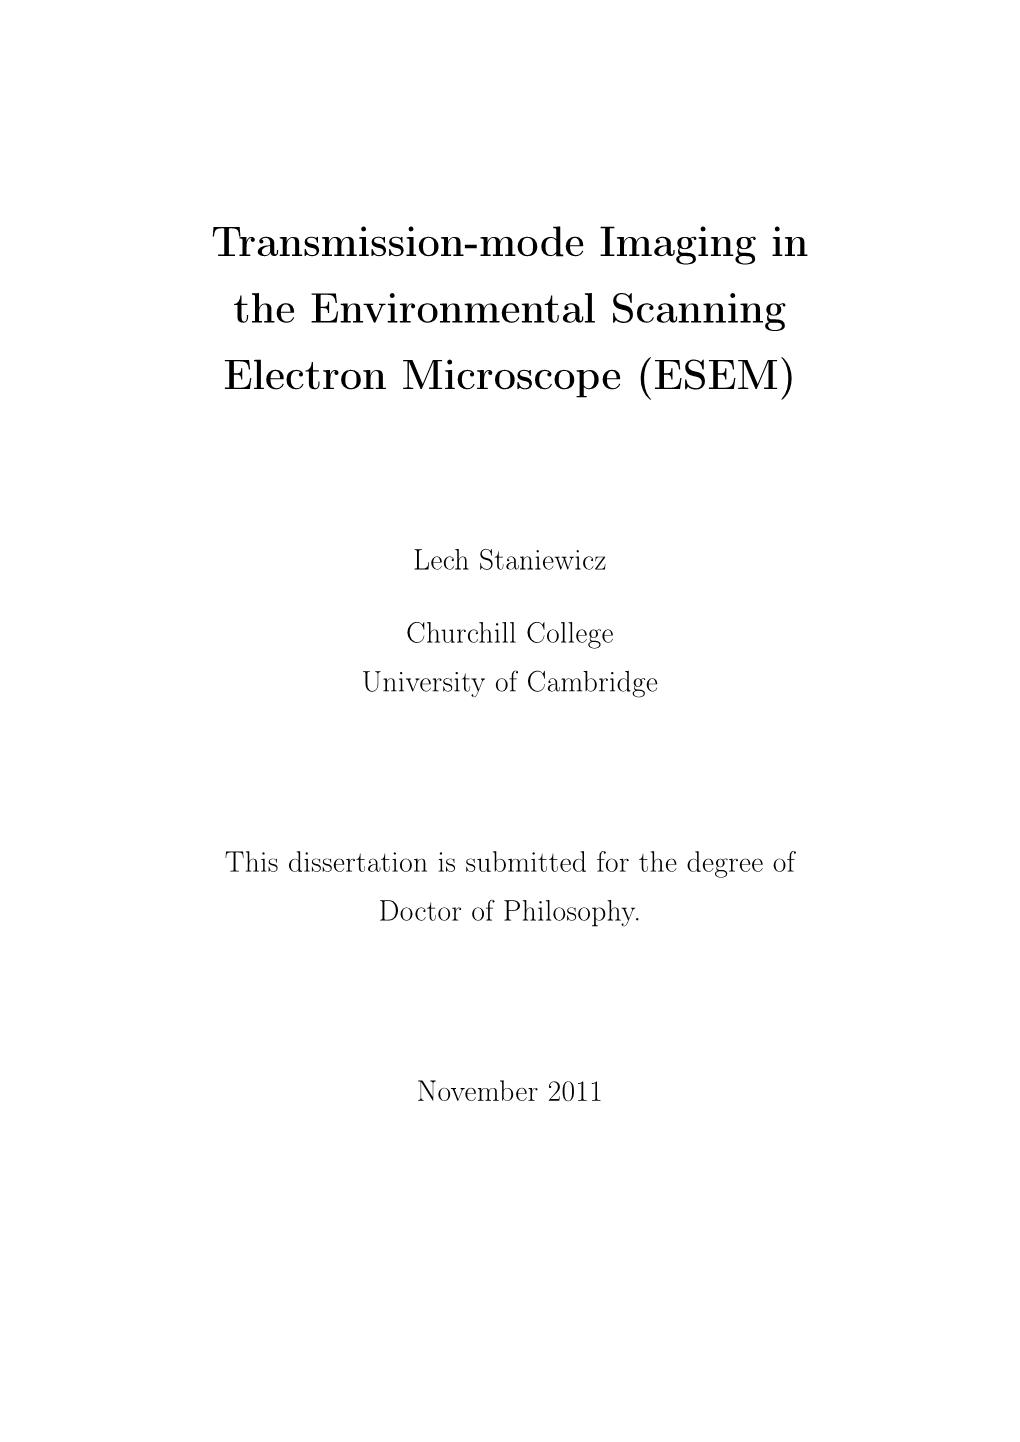 Transmission-Mode Imaging in the ESEM